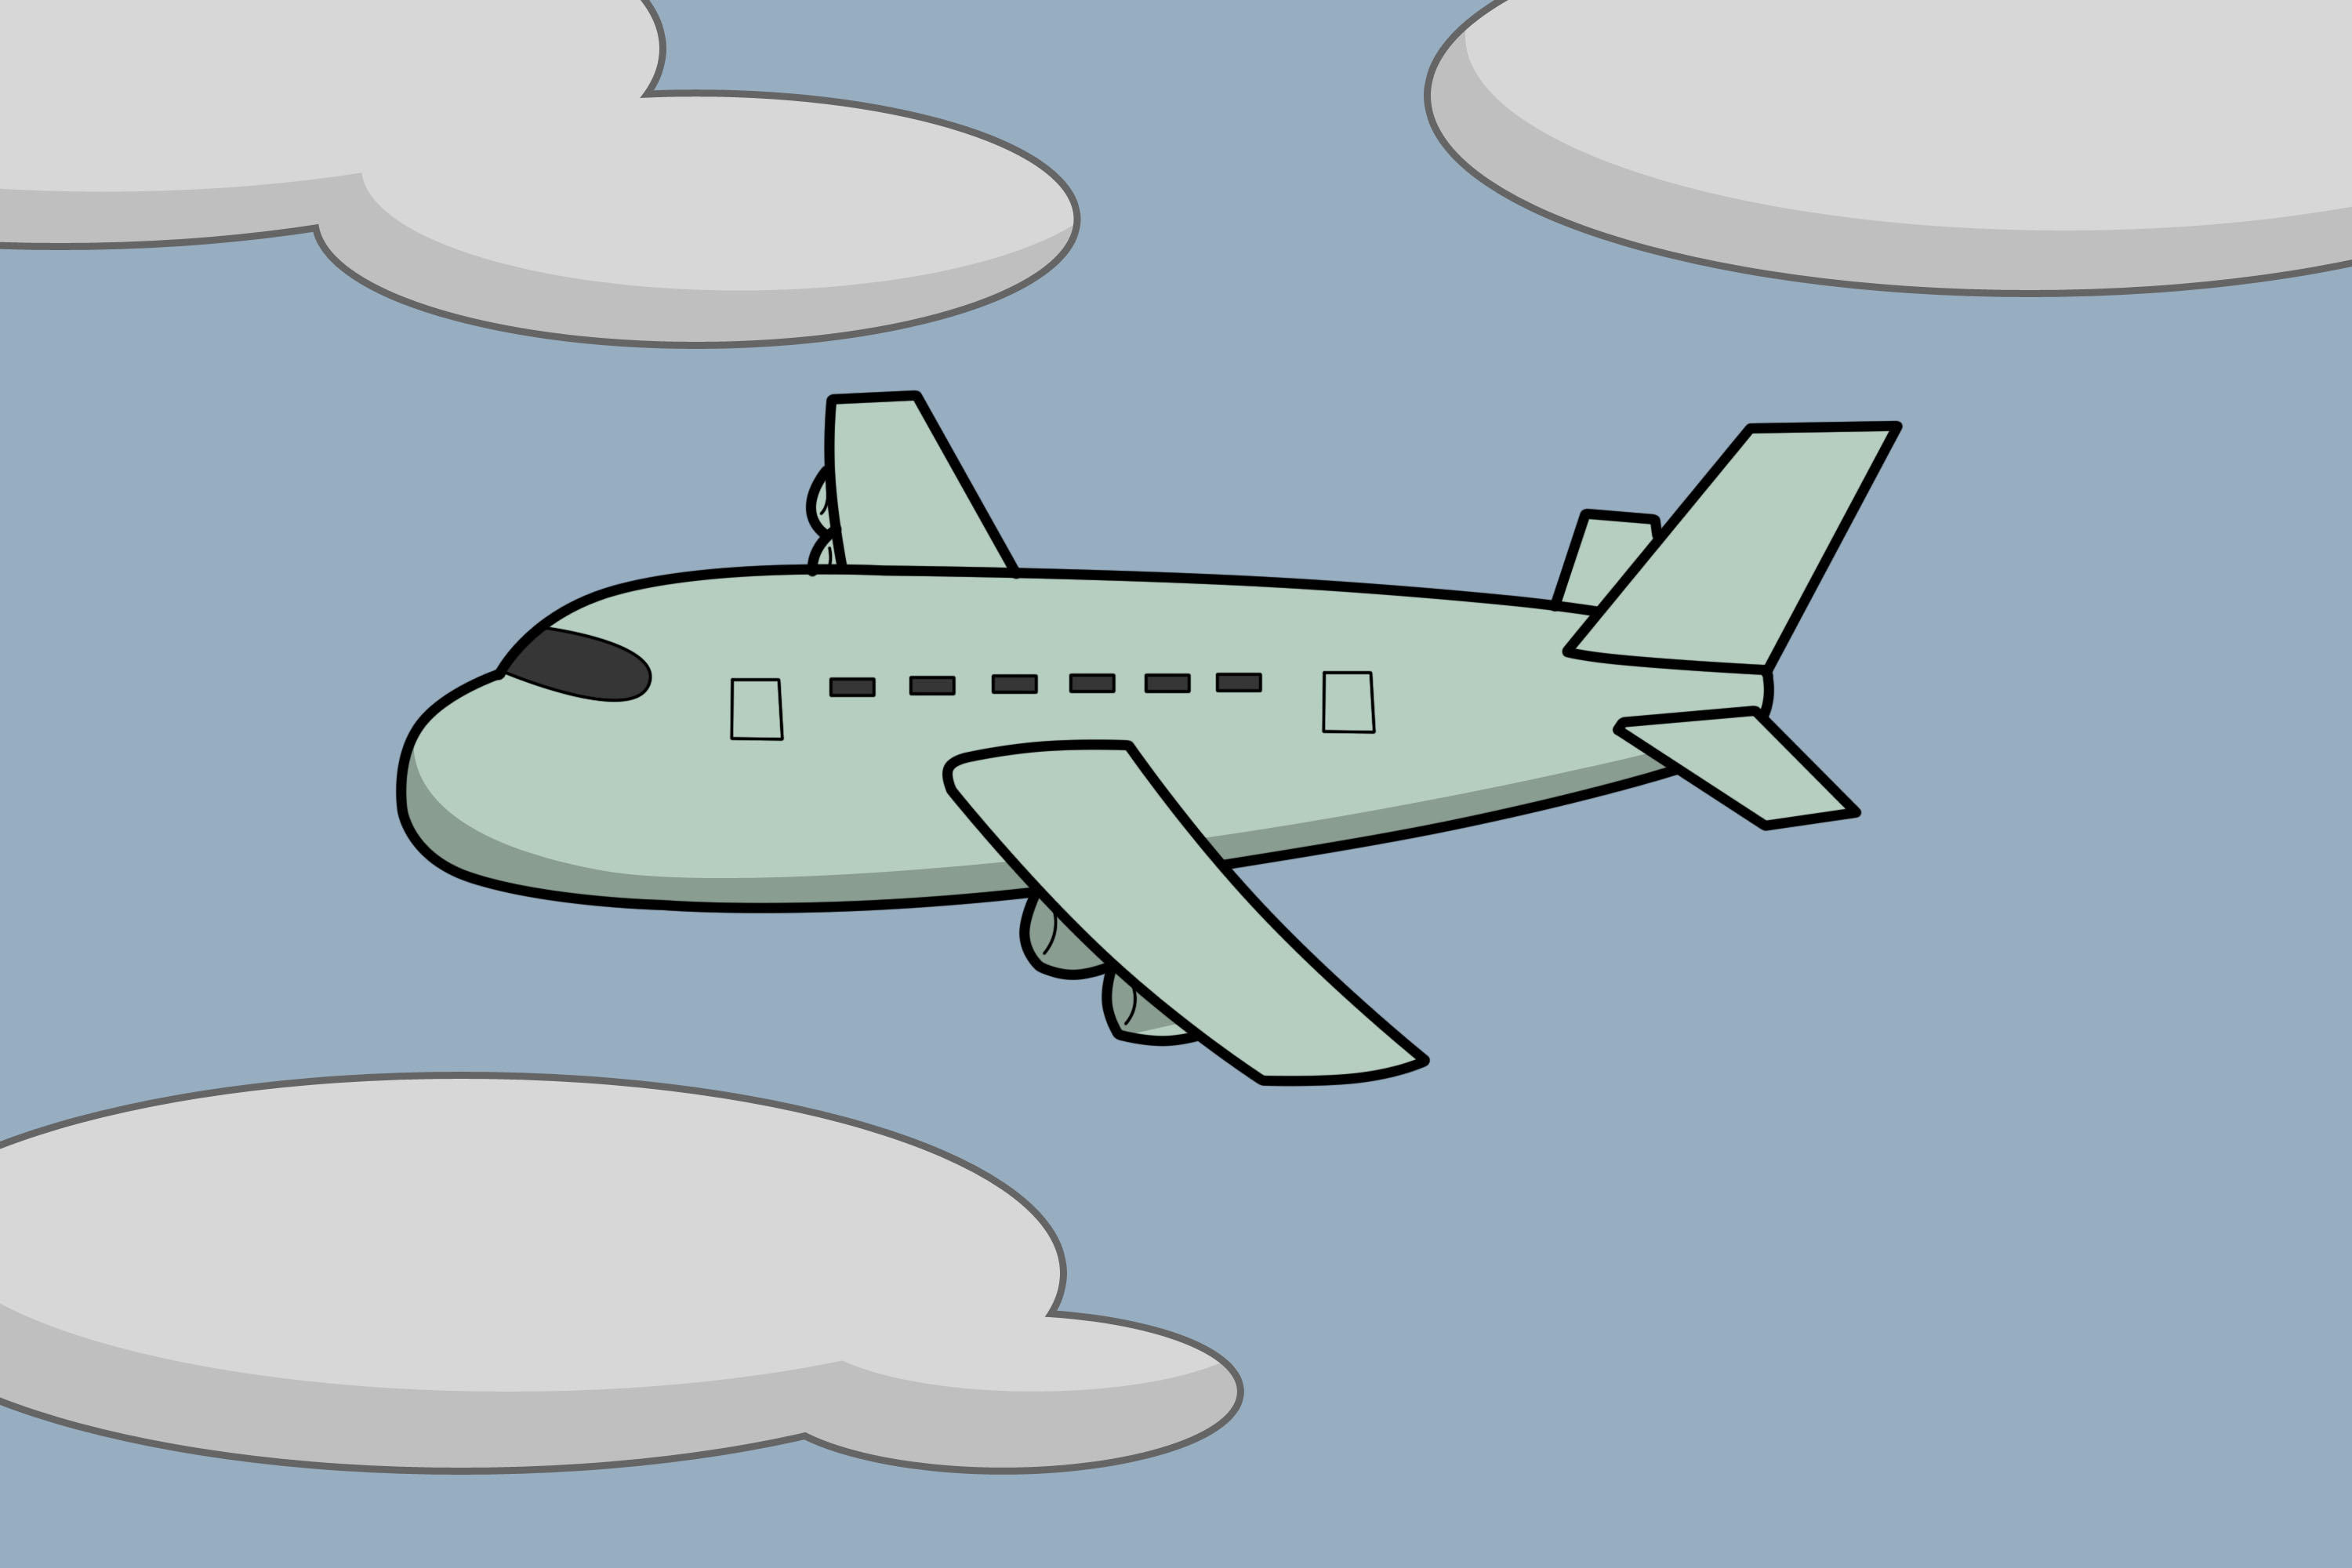 4 Ways to Draw a Plane - wikiHow